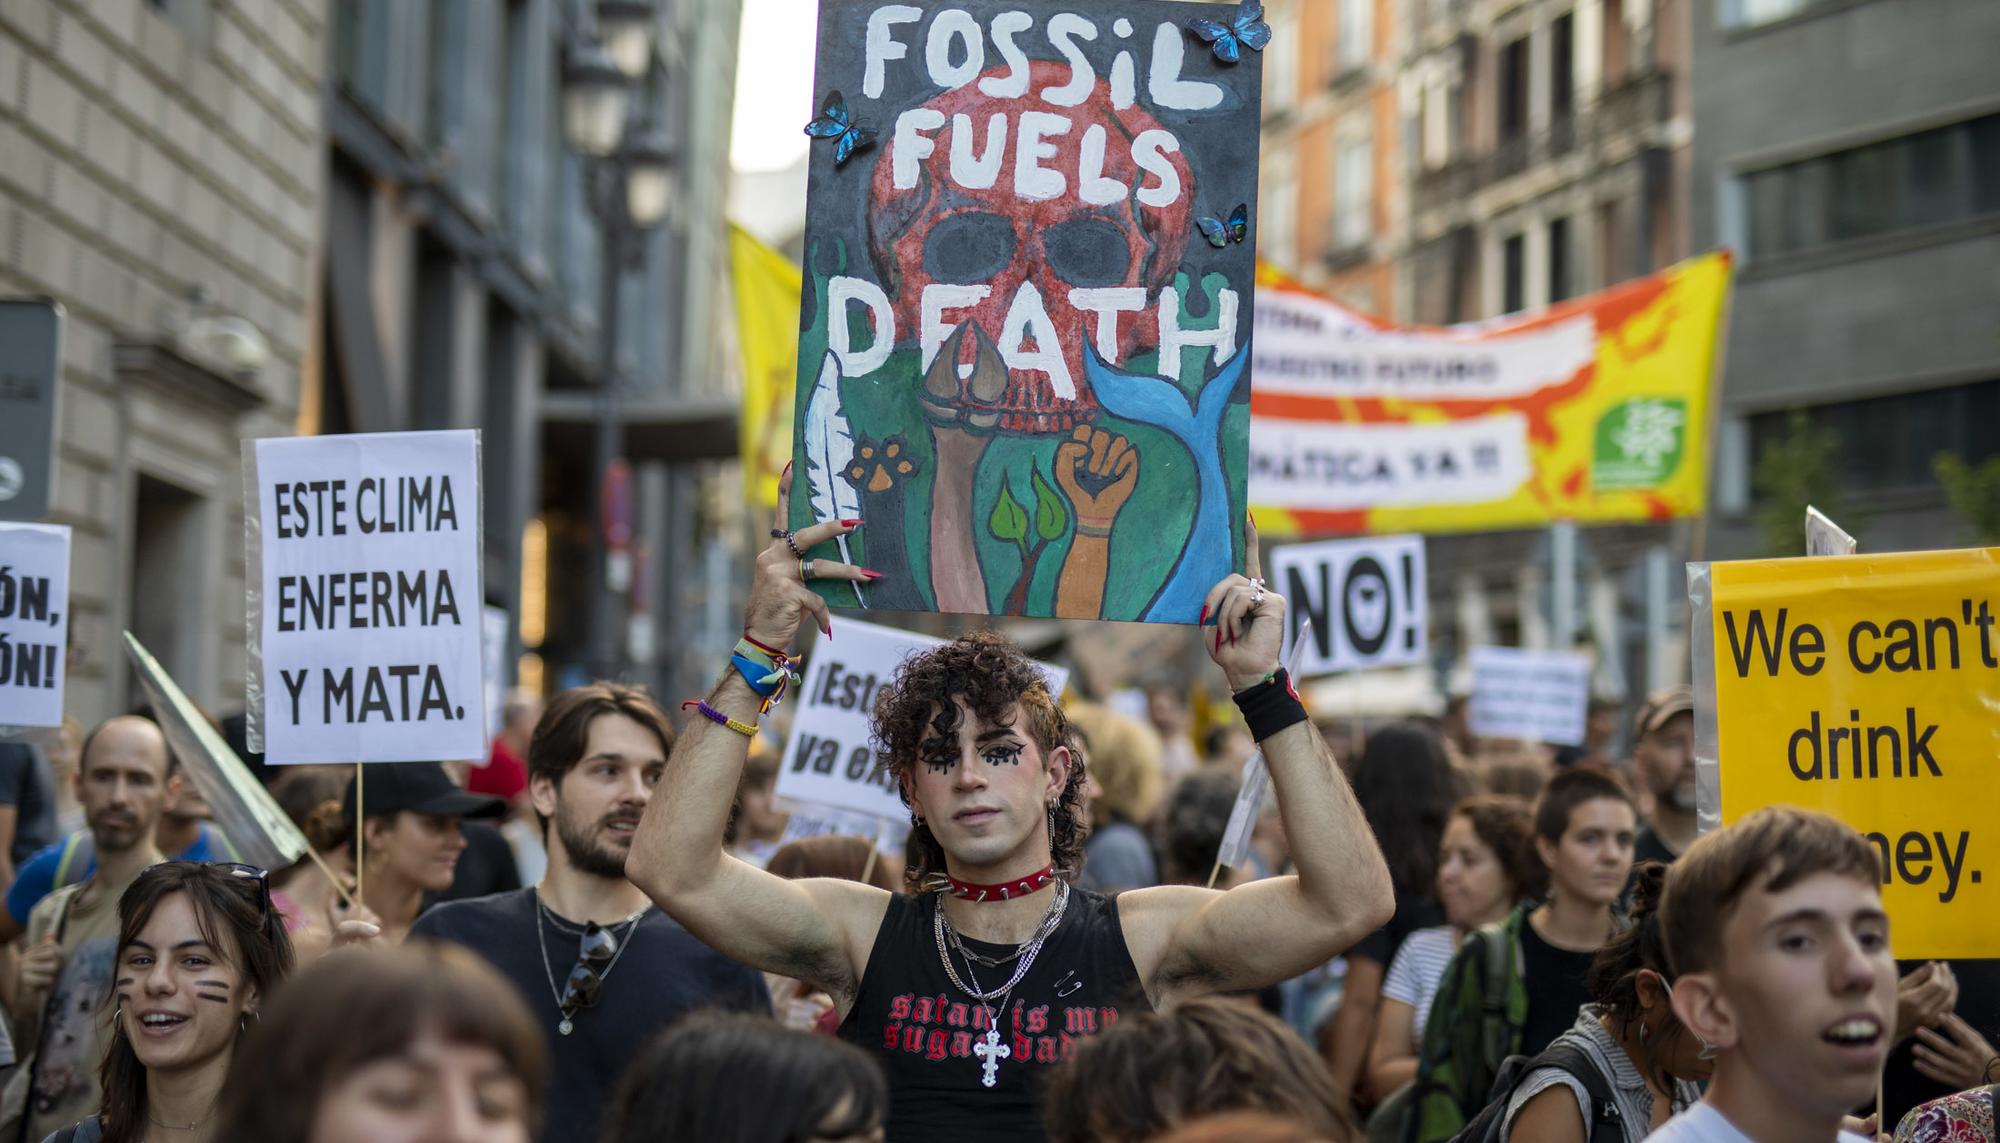 Manifestacion fin de combustibles fosiles Clima - 8